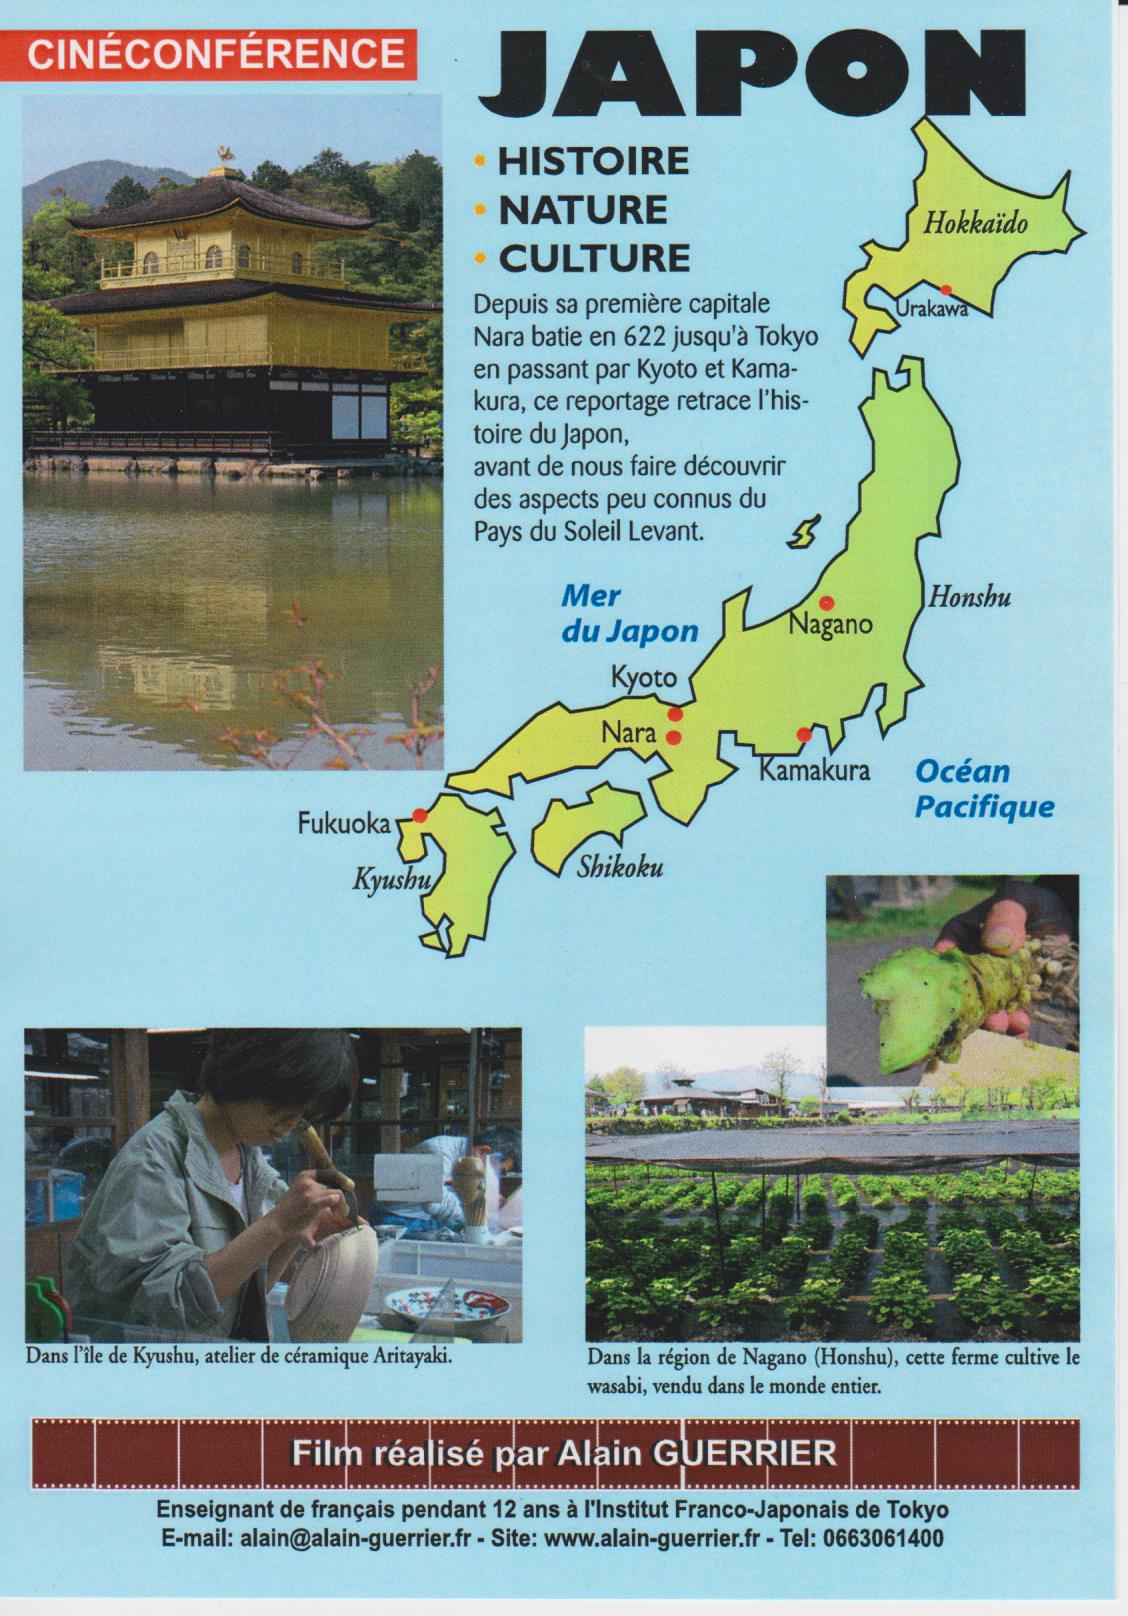 JAPON Histoire Nature Culture